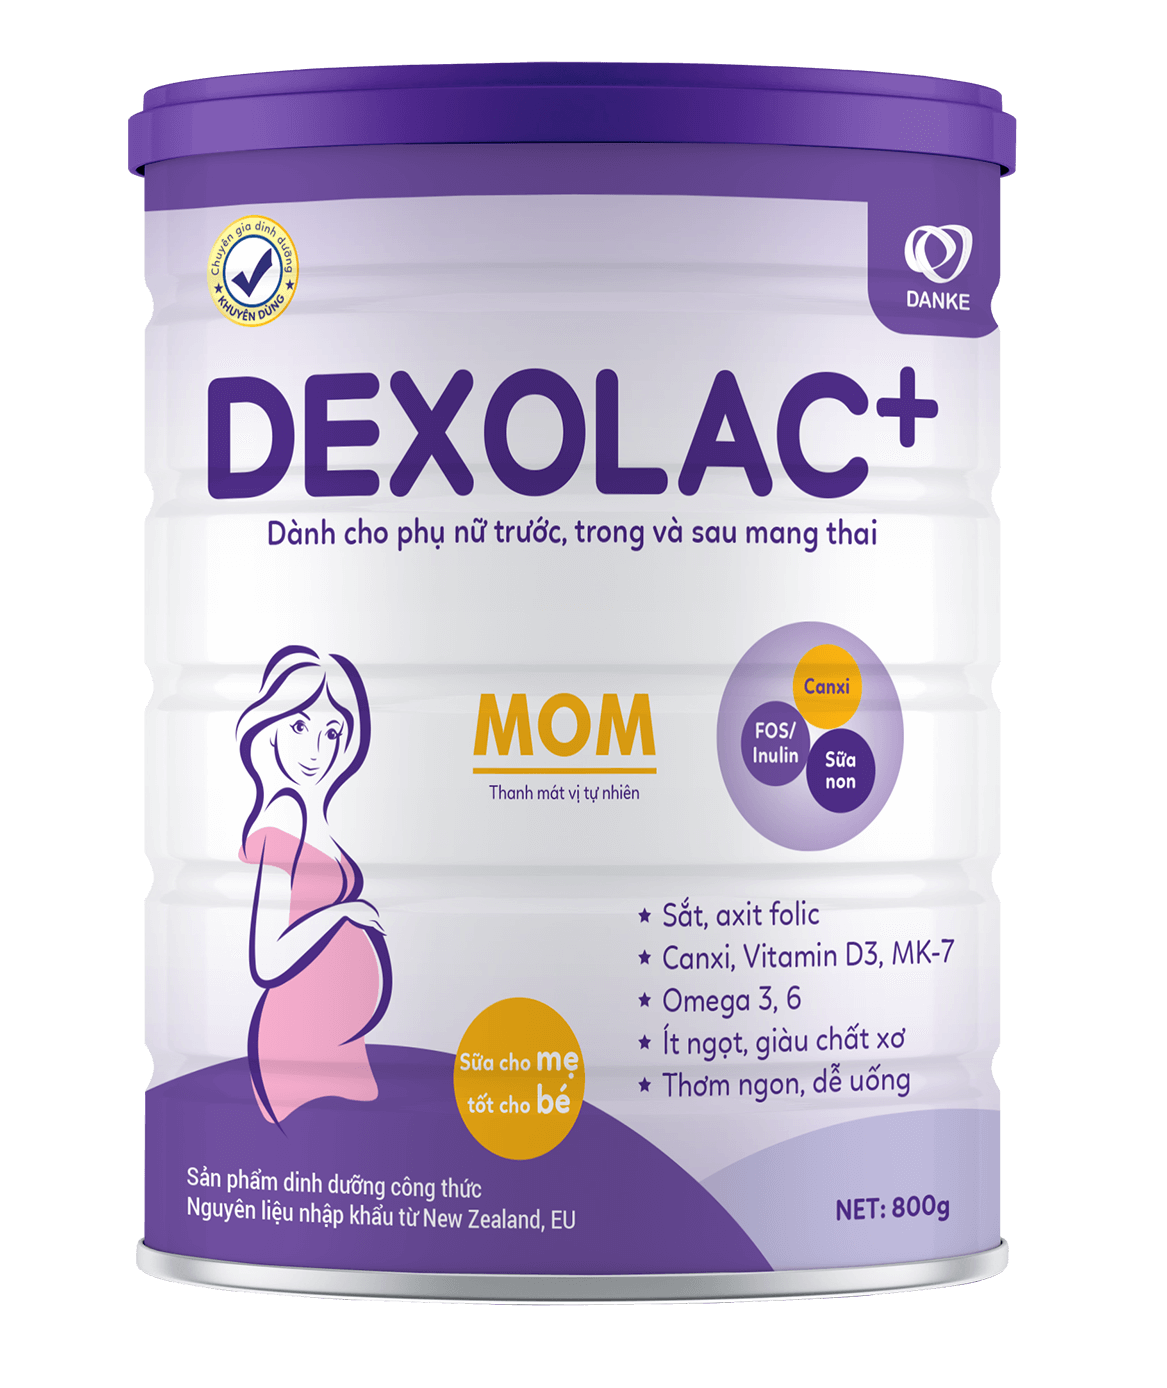 Sữa Dexolac+ Mom